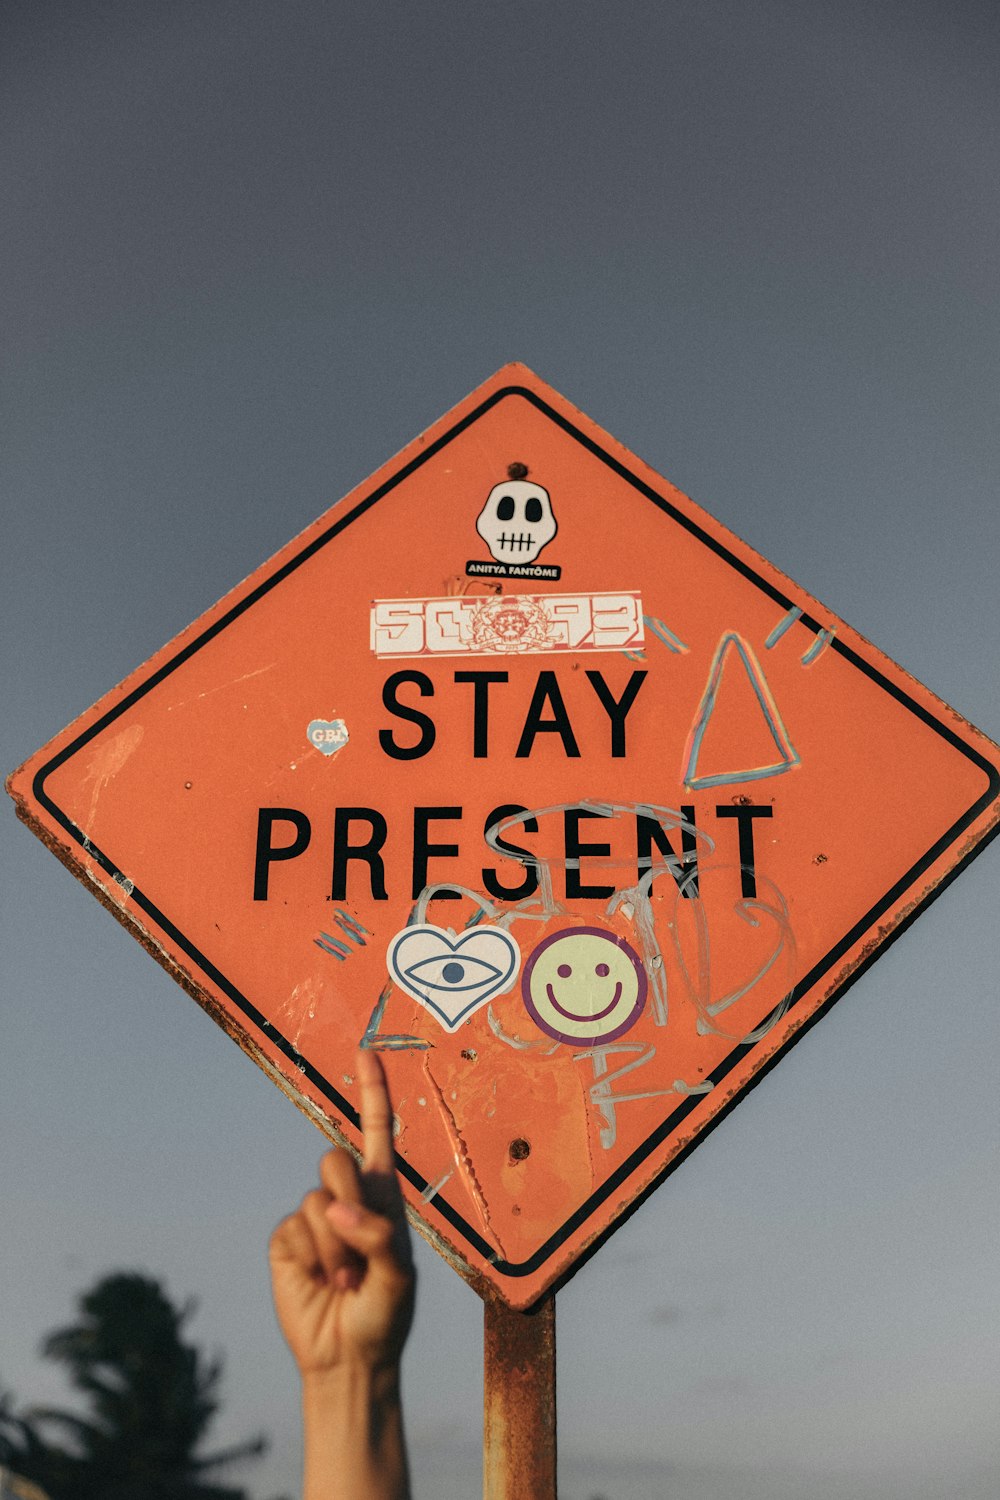 낮 동안 Stay Present 도로 표지판을 가리키는 사람